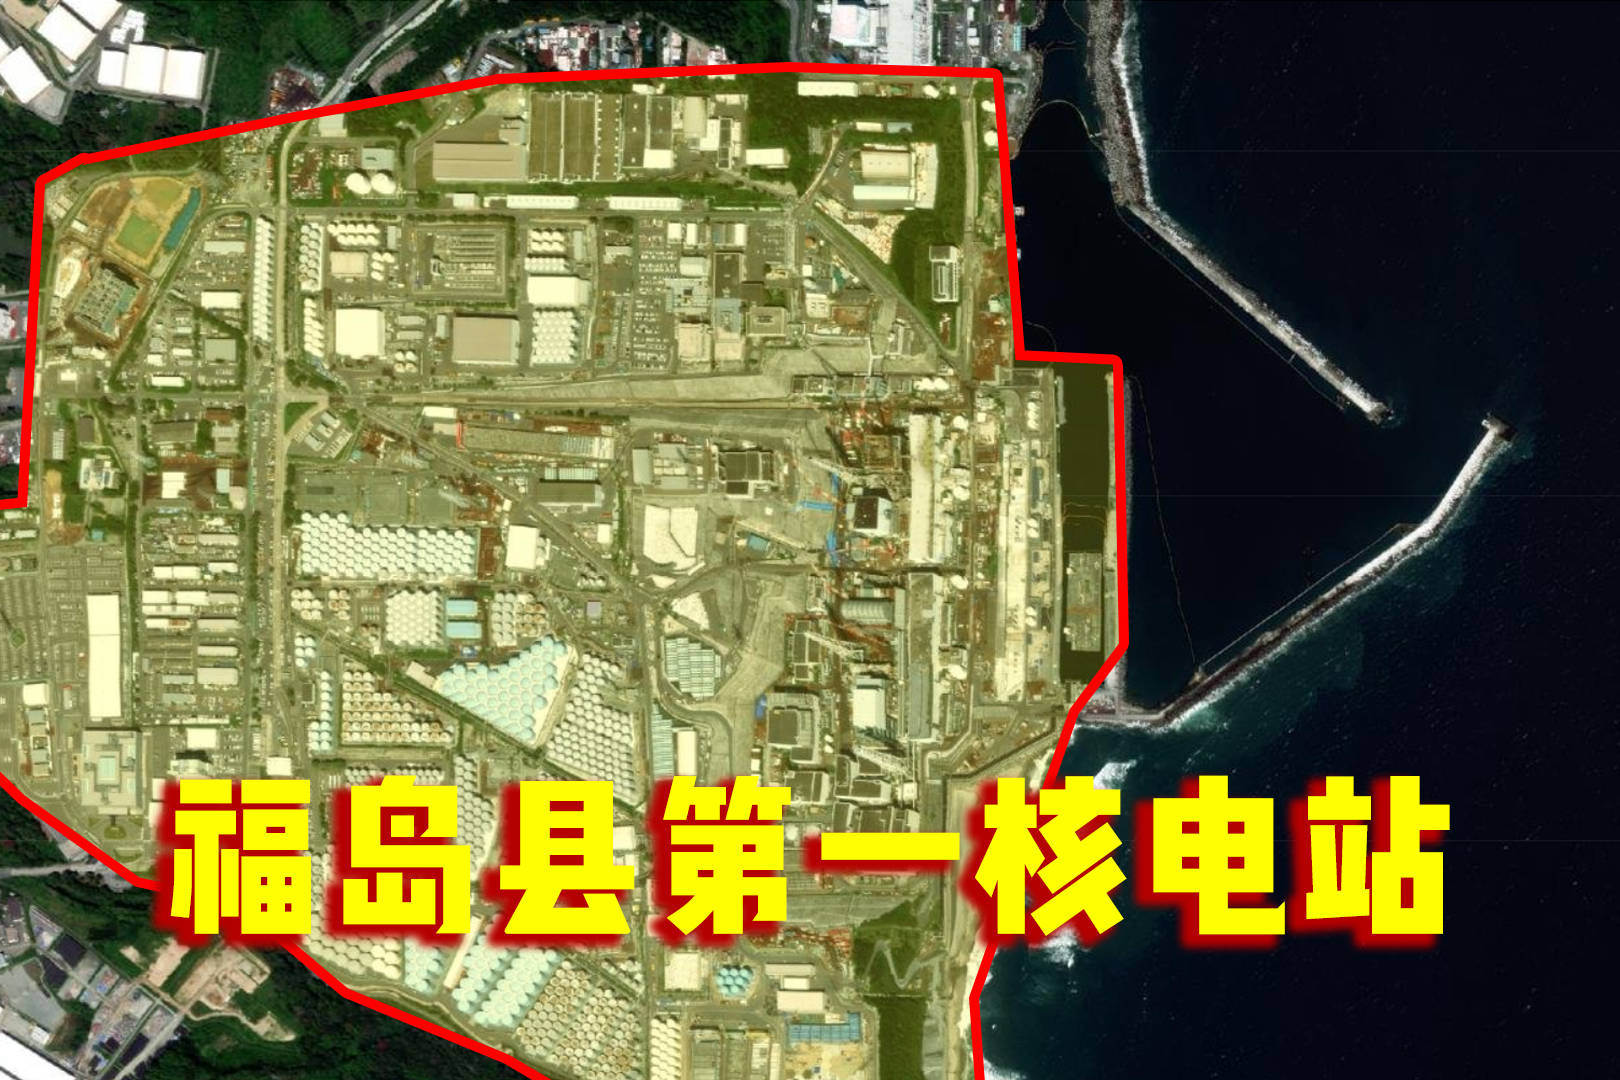 卫星航拍福岛第一核电站,世界最大核电站第一站,紧邻太平洋